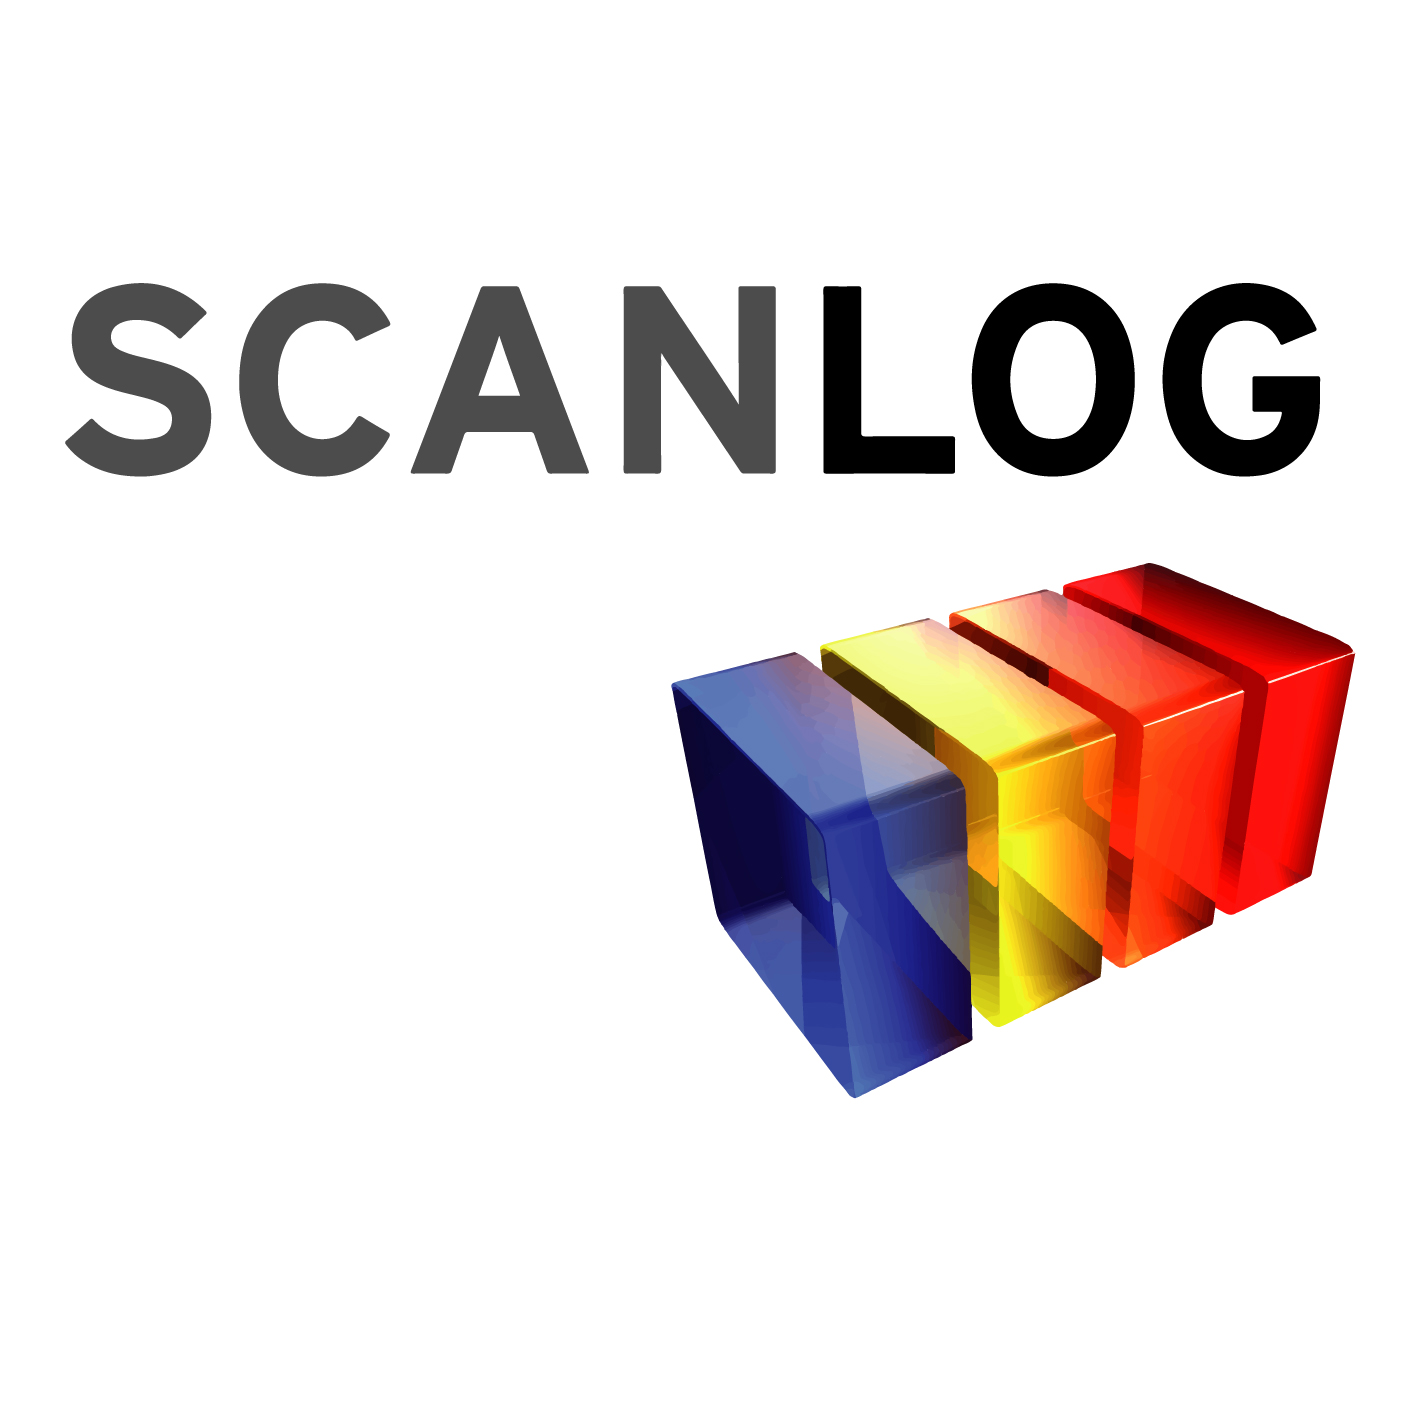 SCANLOG logo